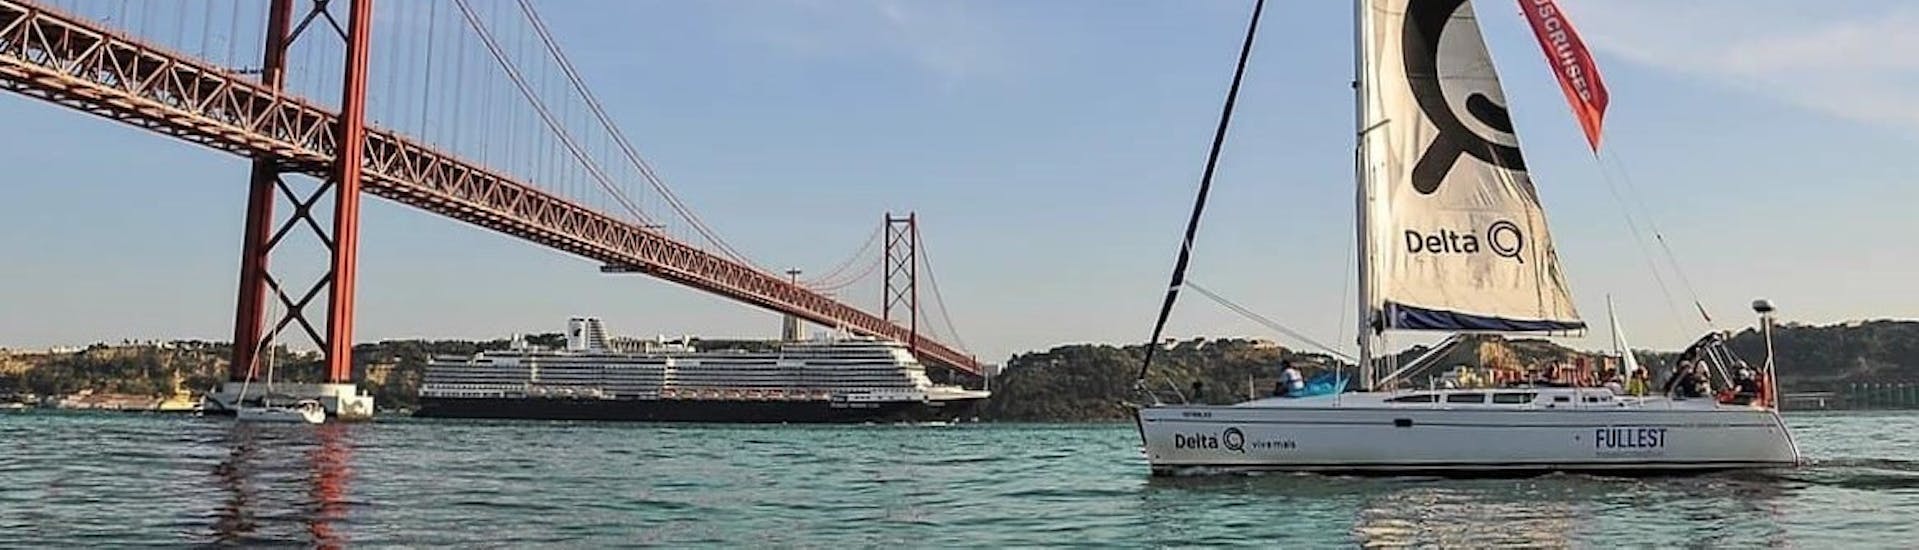 Gita privata in barca a vela da Doca do Bom Sucesso a Tago con bagno in mare e visita turistica.